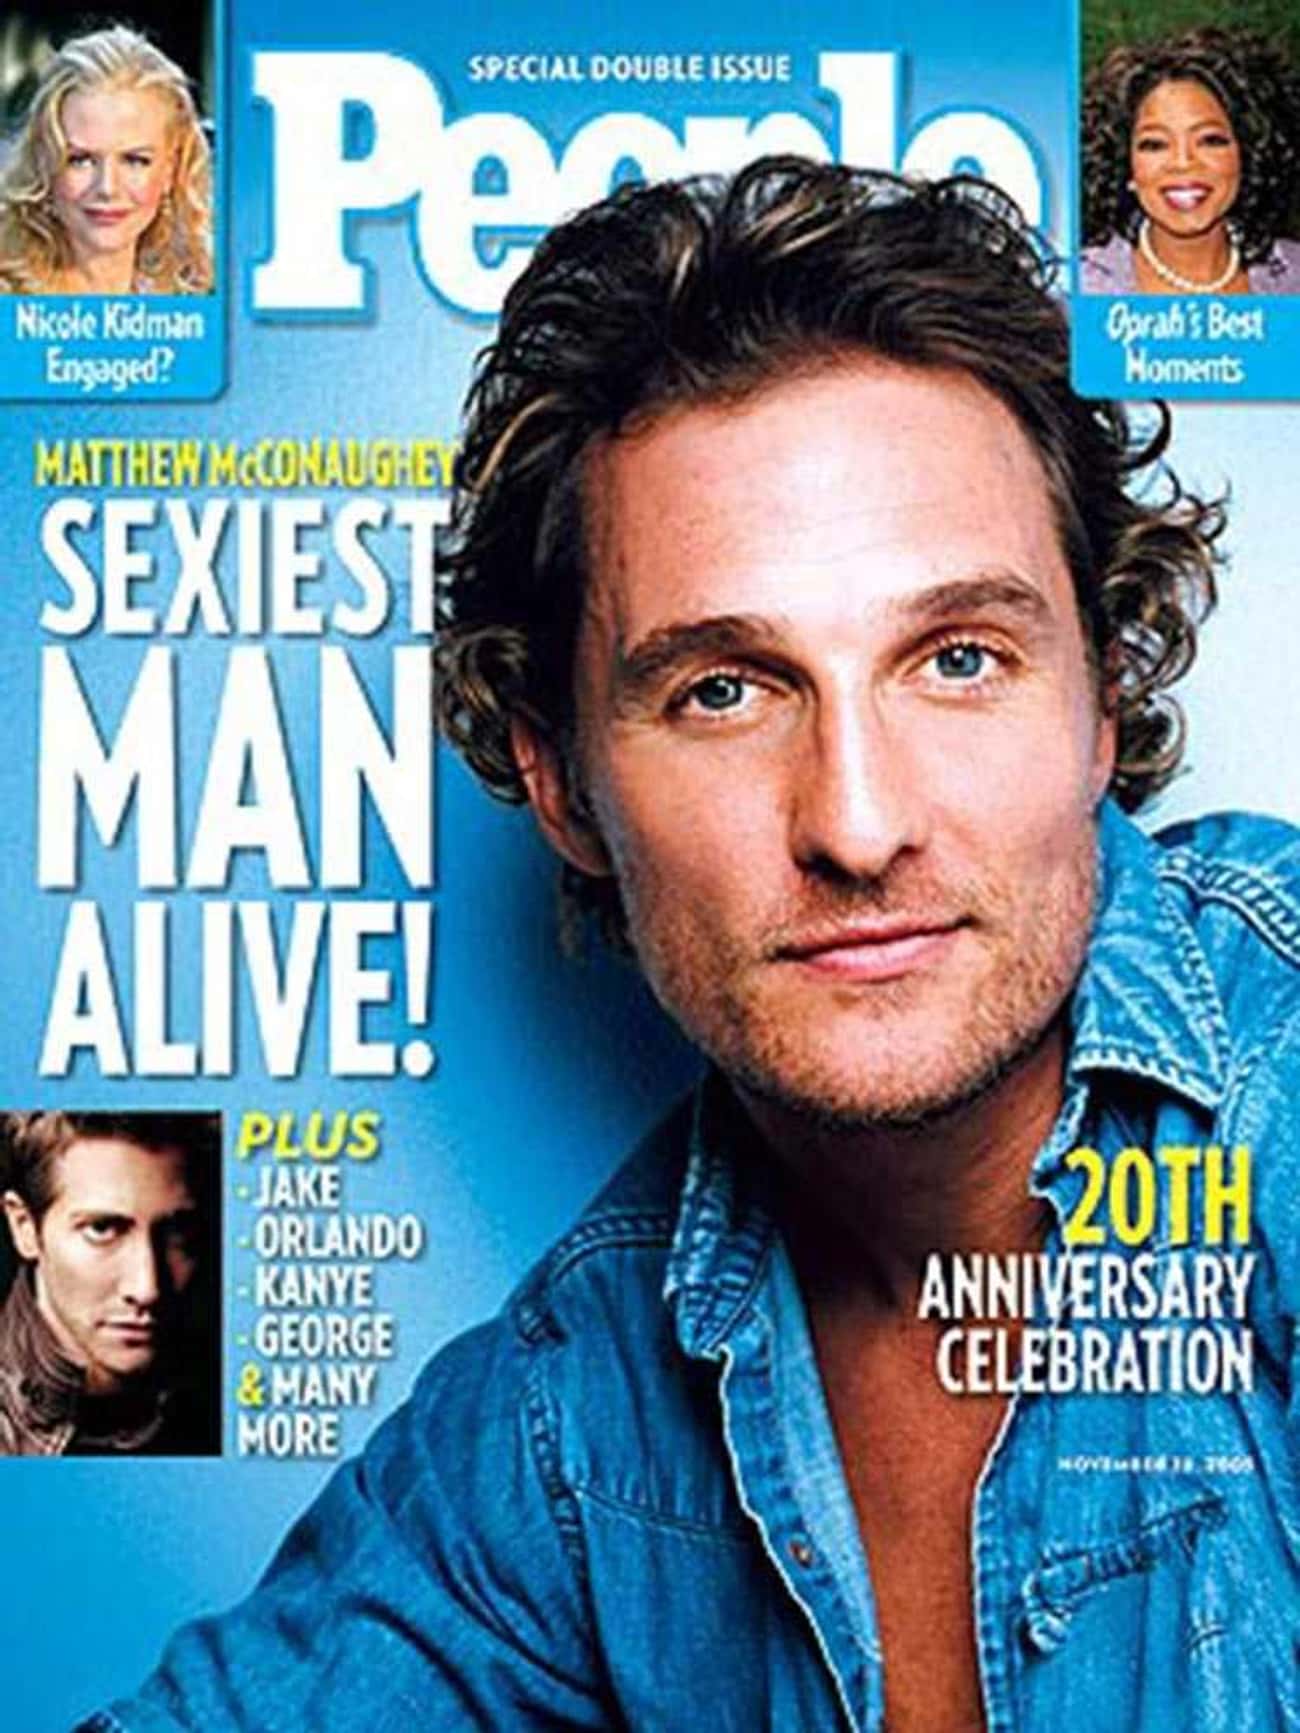 2005 - Matthew McConaughey